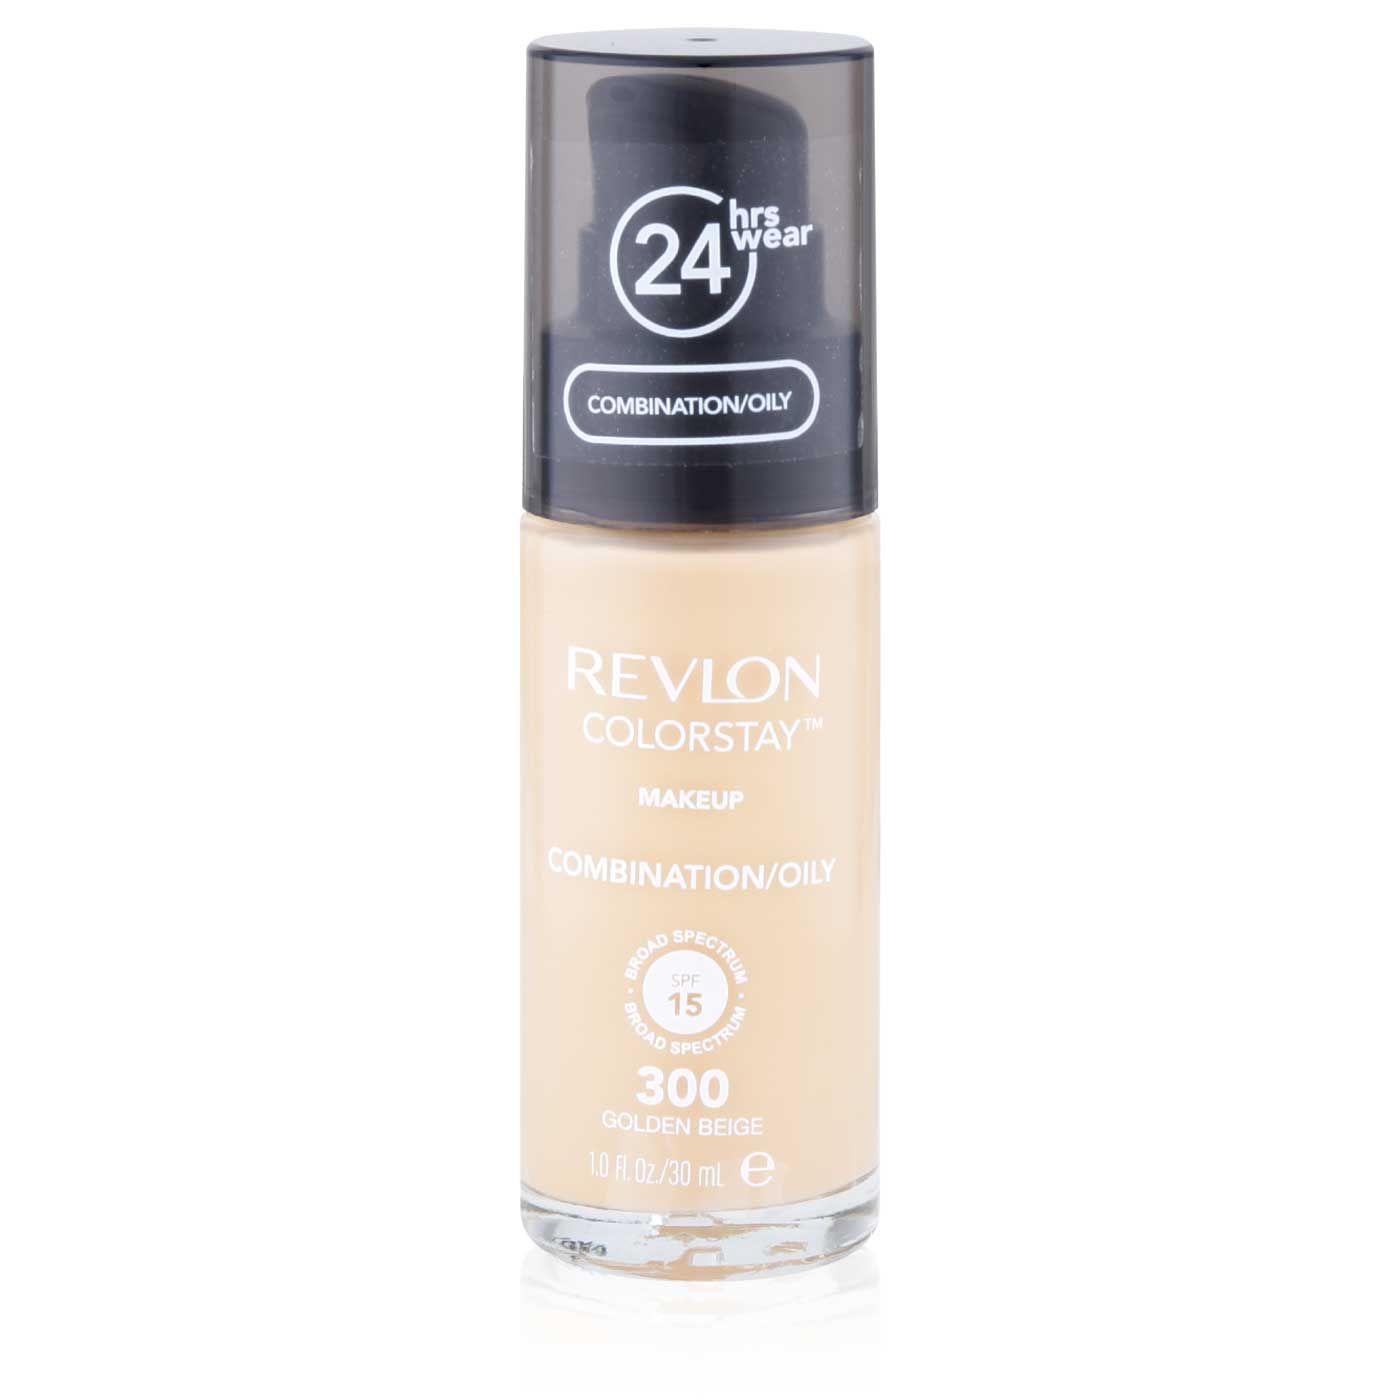 Revlon Colorstay Makeup Combination/Oily GoldenBeige w/ Pump - 1